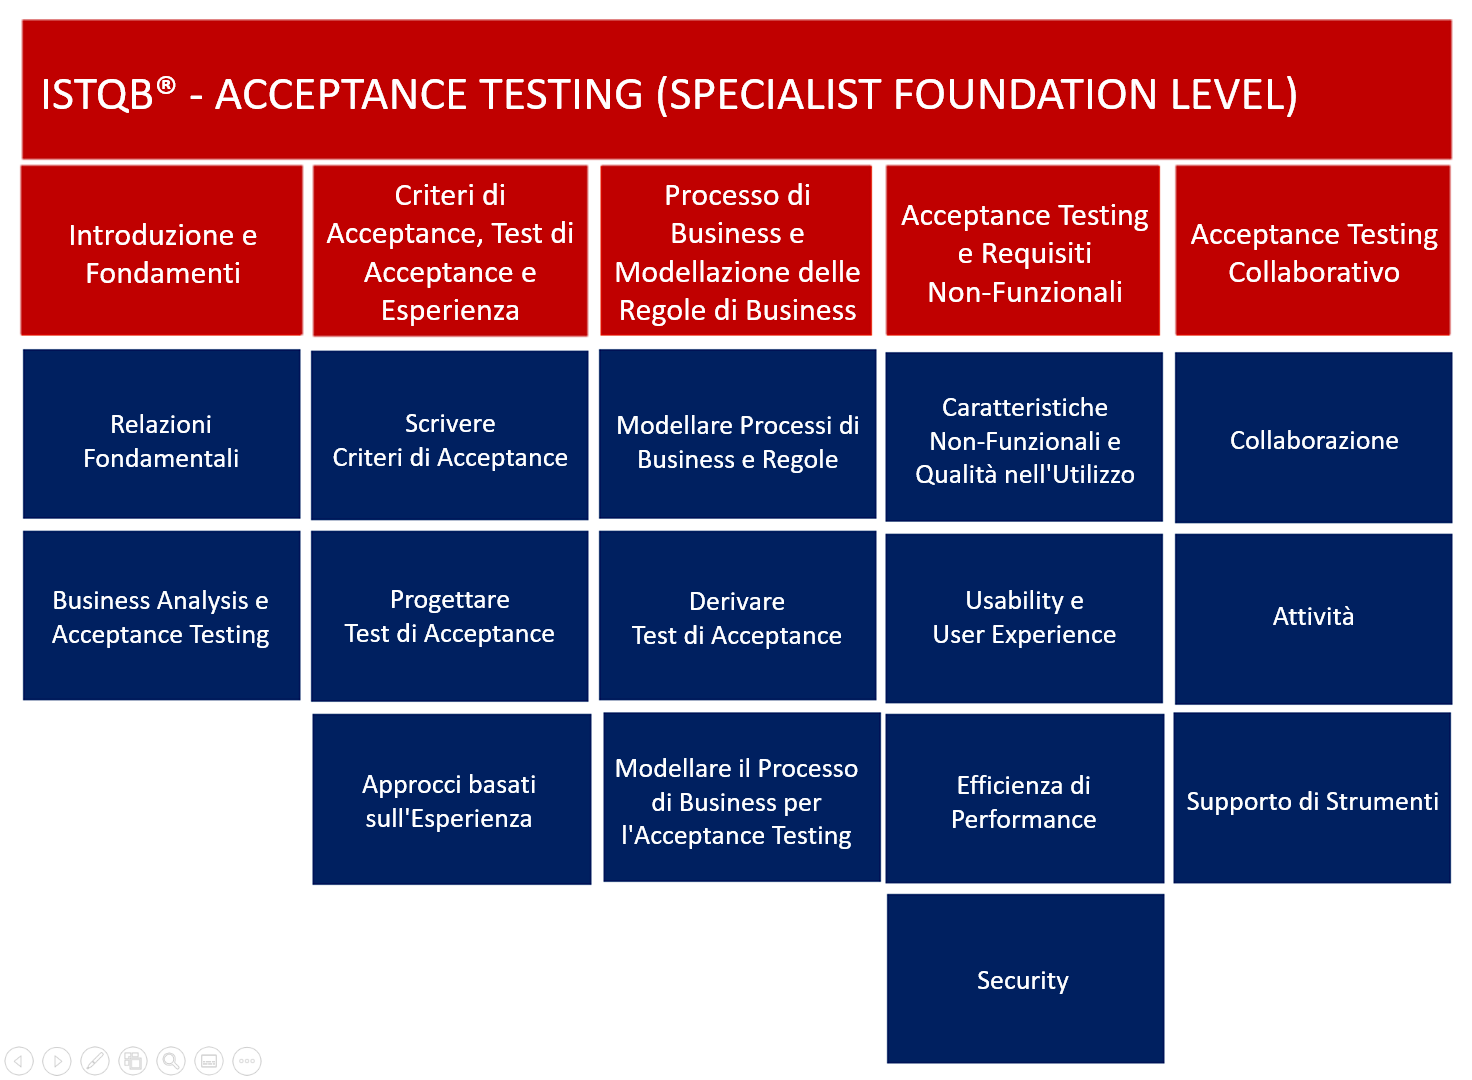 Contenuti della certificazione Specialist Acceptance Testing